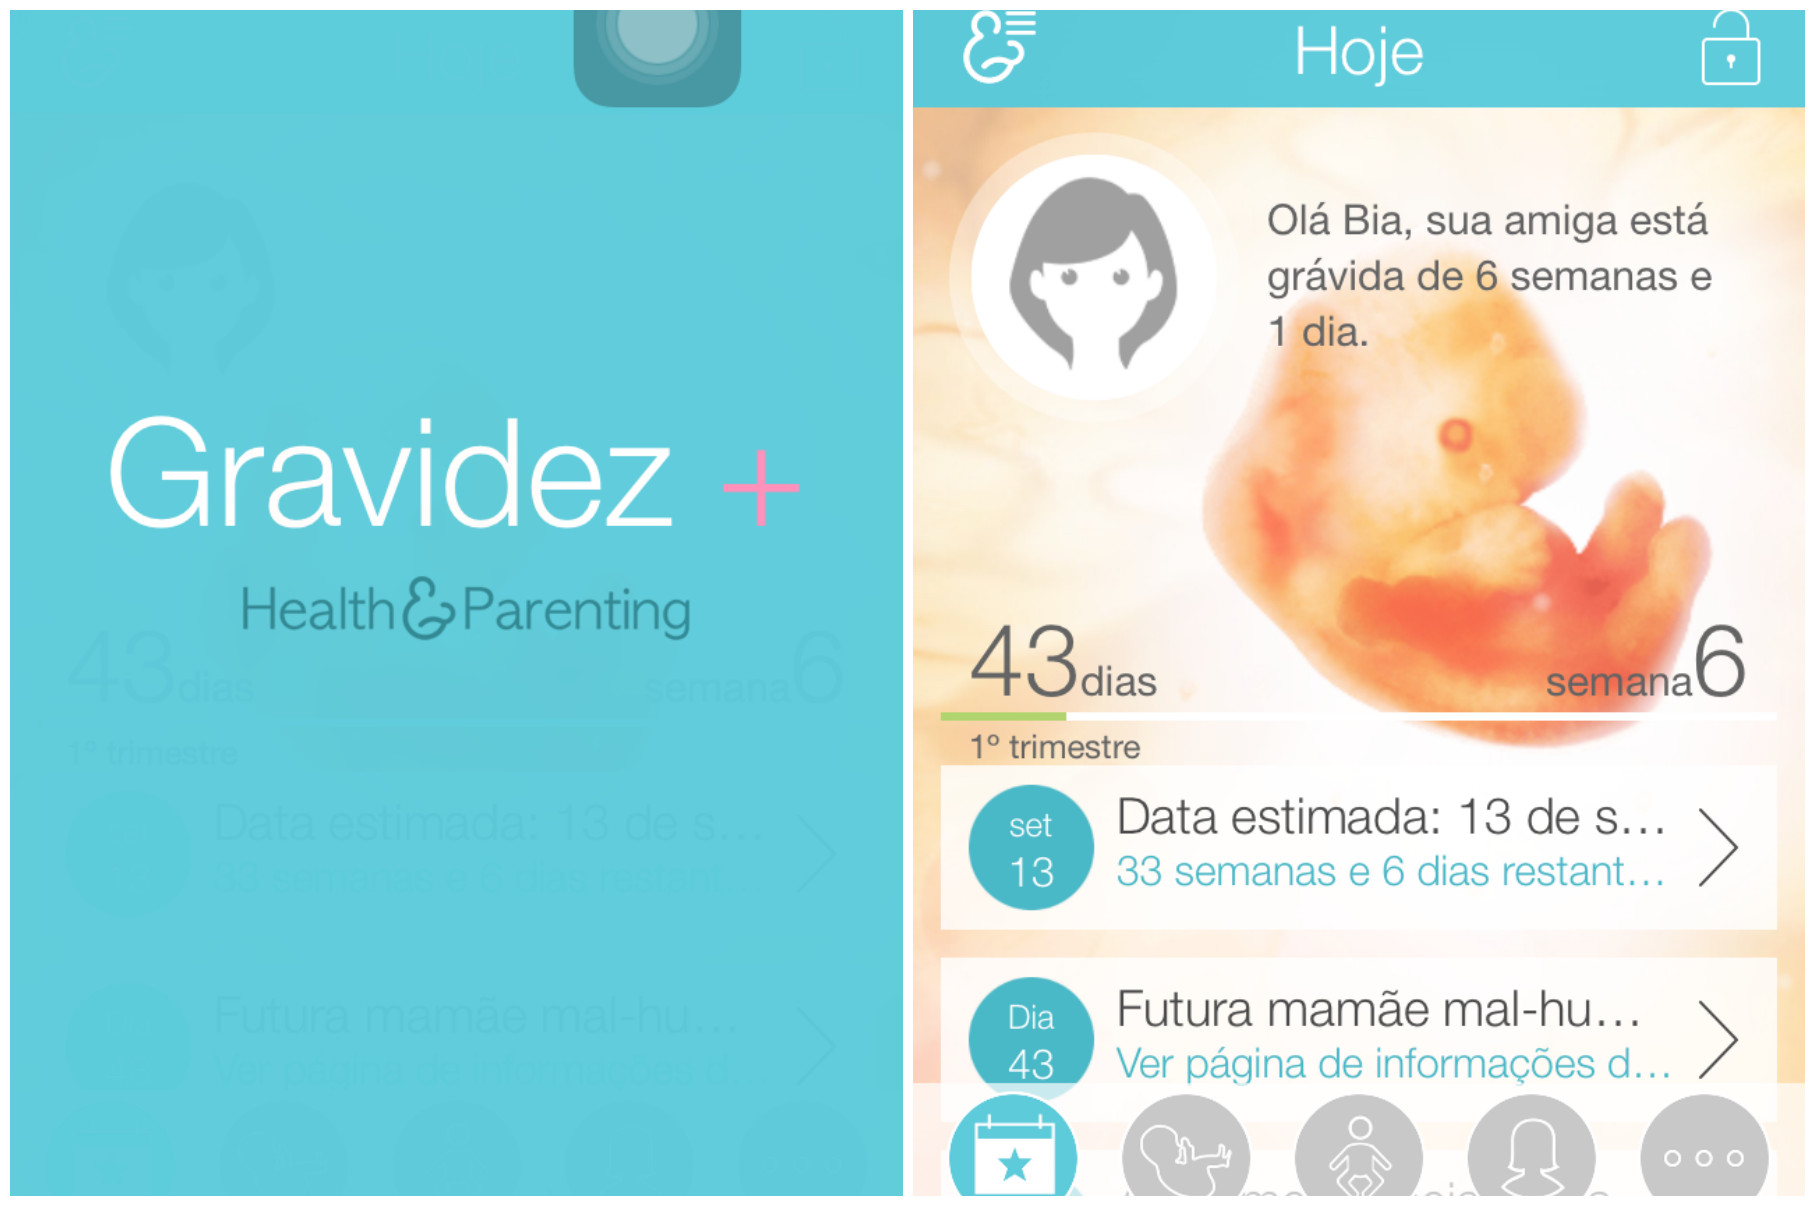 Conheça o aplicativo para grávida Gravidez+. Fonte: Agora Sou Mãe.